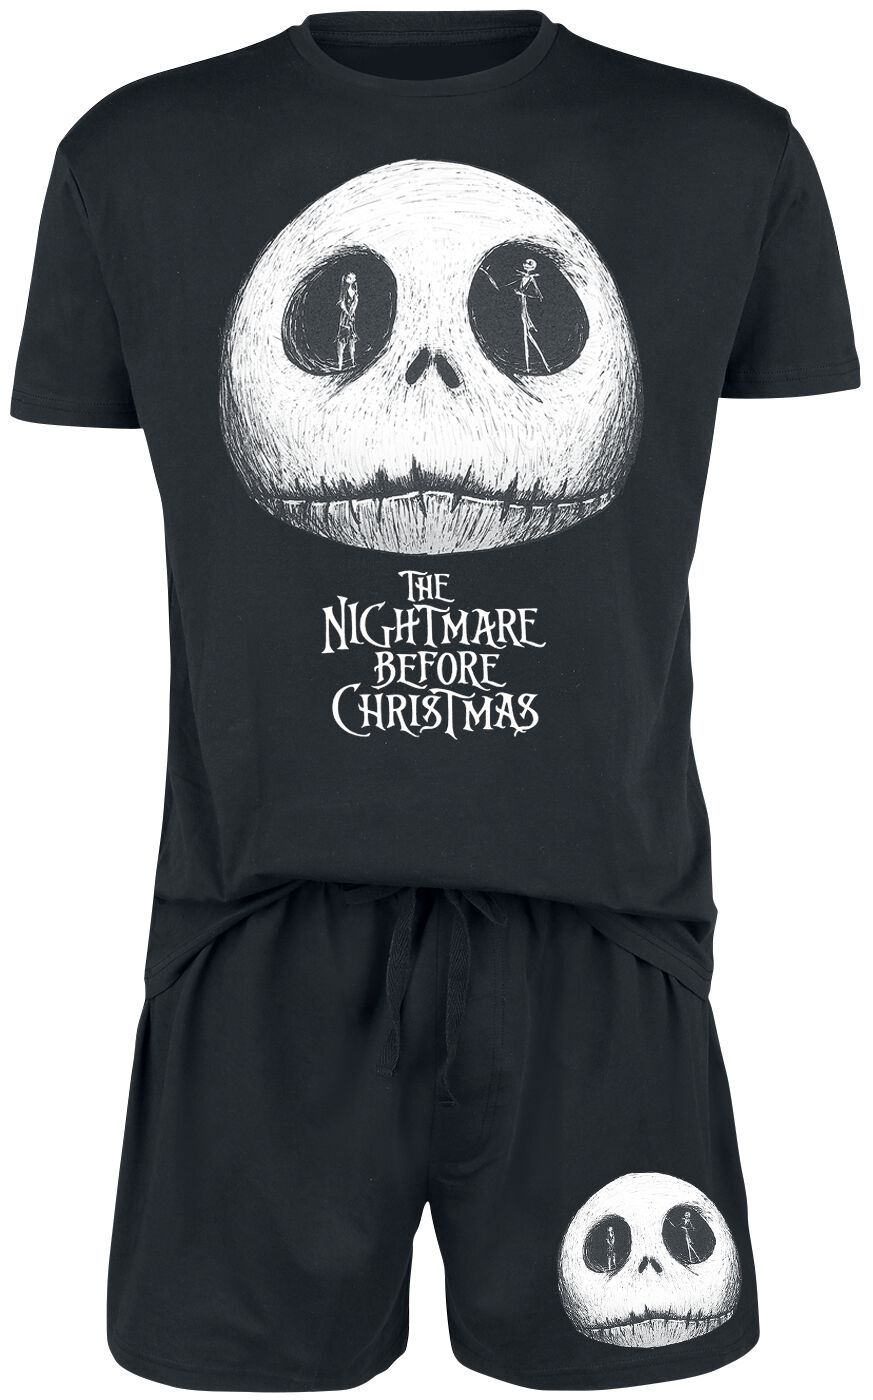 The Nightmare Before Christmas - Disney Schlafanzug - Jack and Sally - S bis 3XL - für Männer - Größe XL - schwarz  - EMP exklusives Merchandise!